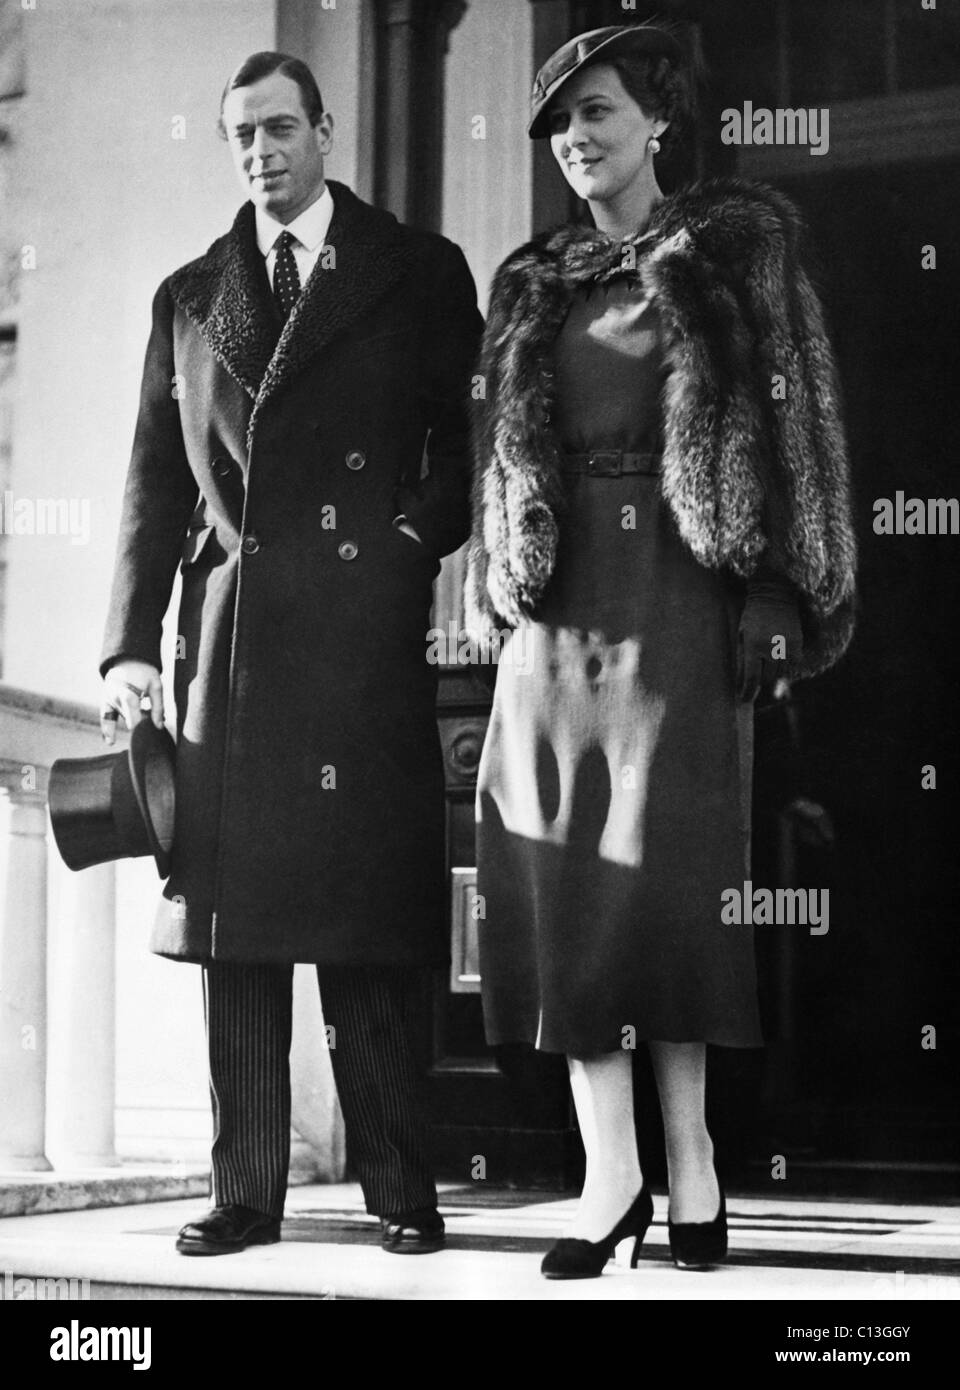 La familia real británica. Prince George, duque de Kent y la Princesa Marina, duquesa de Kent, Londres, Inglaterra, alrededor de finales de 1930. Foto de stock